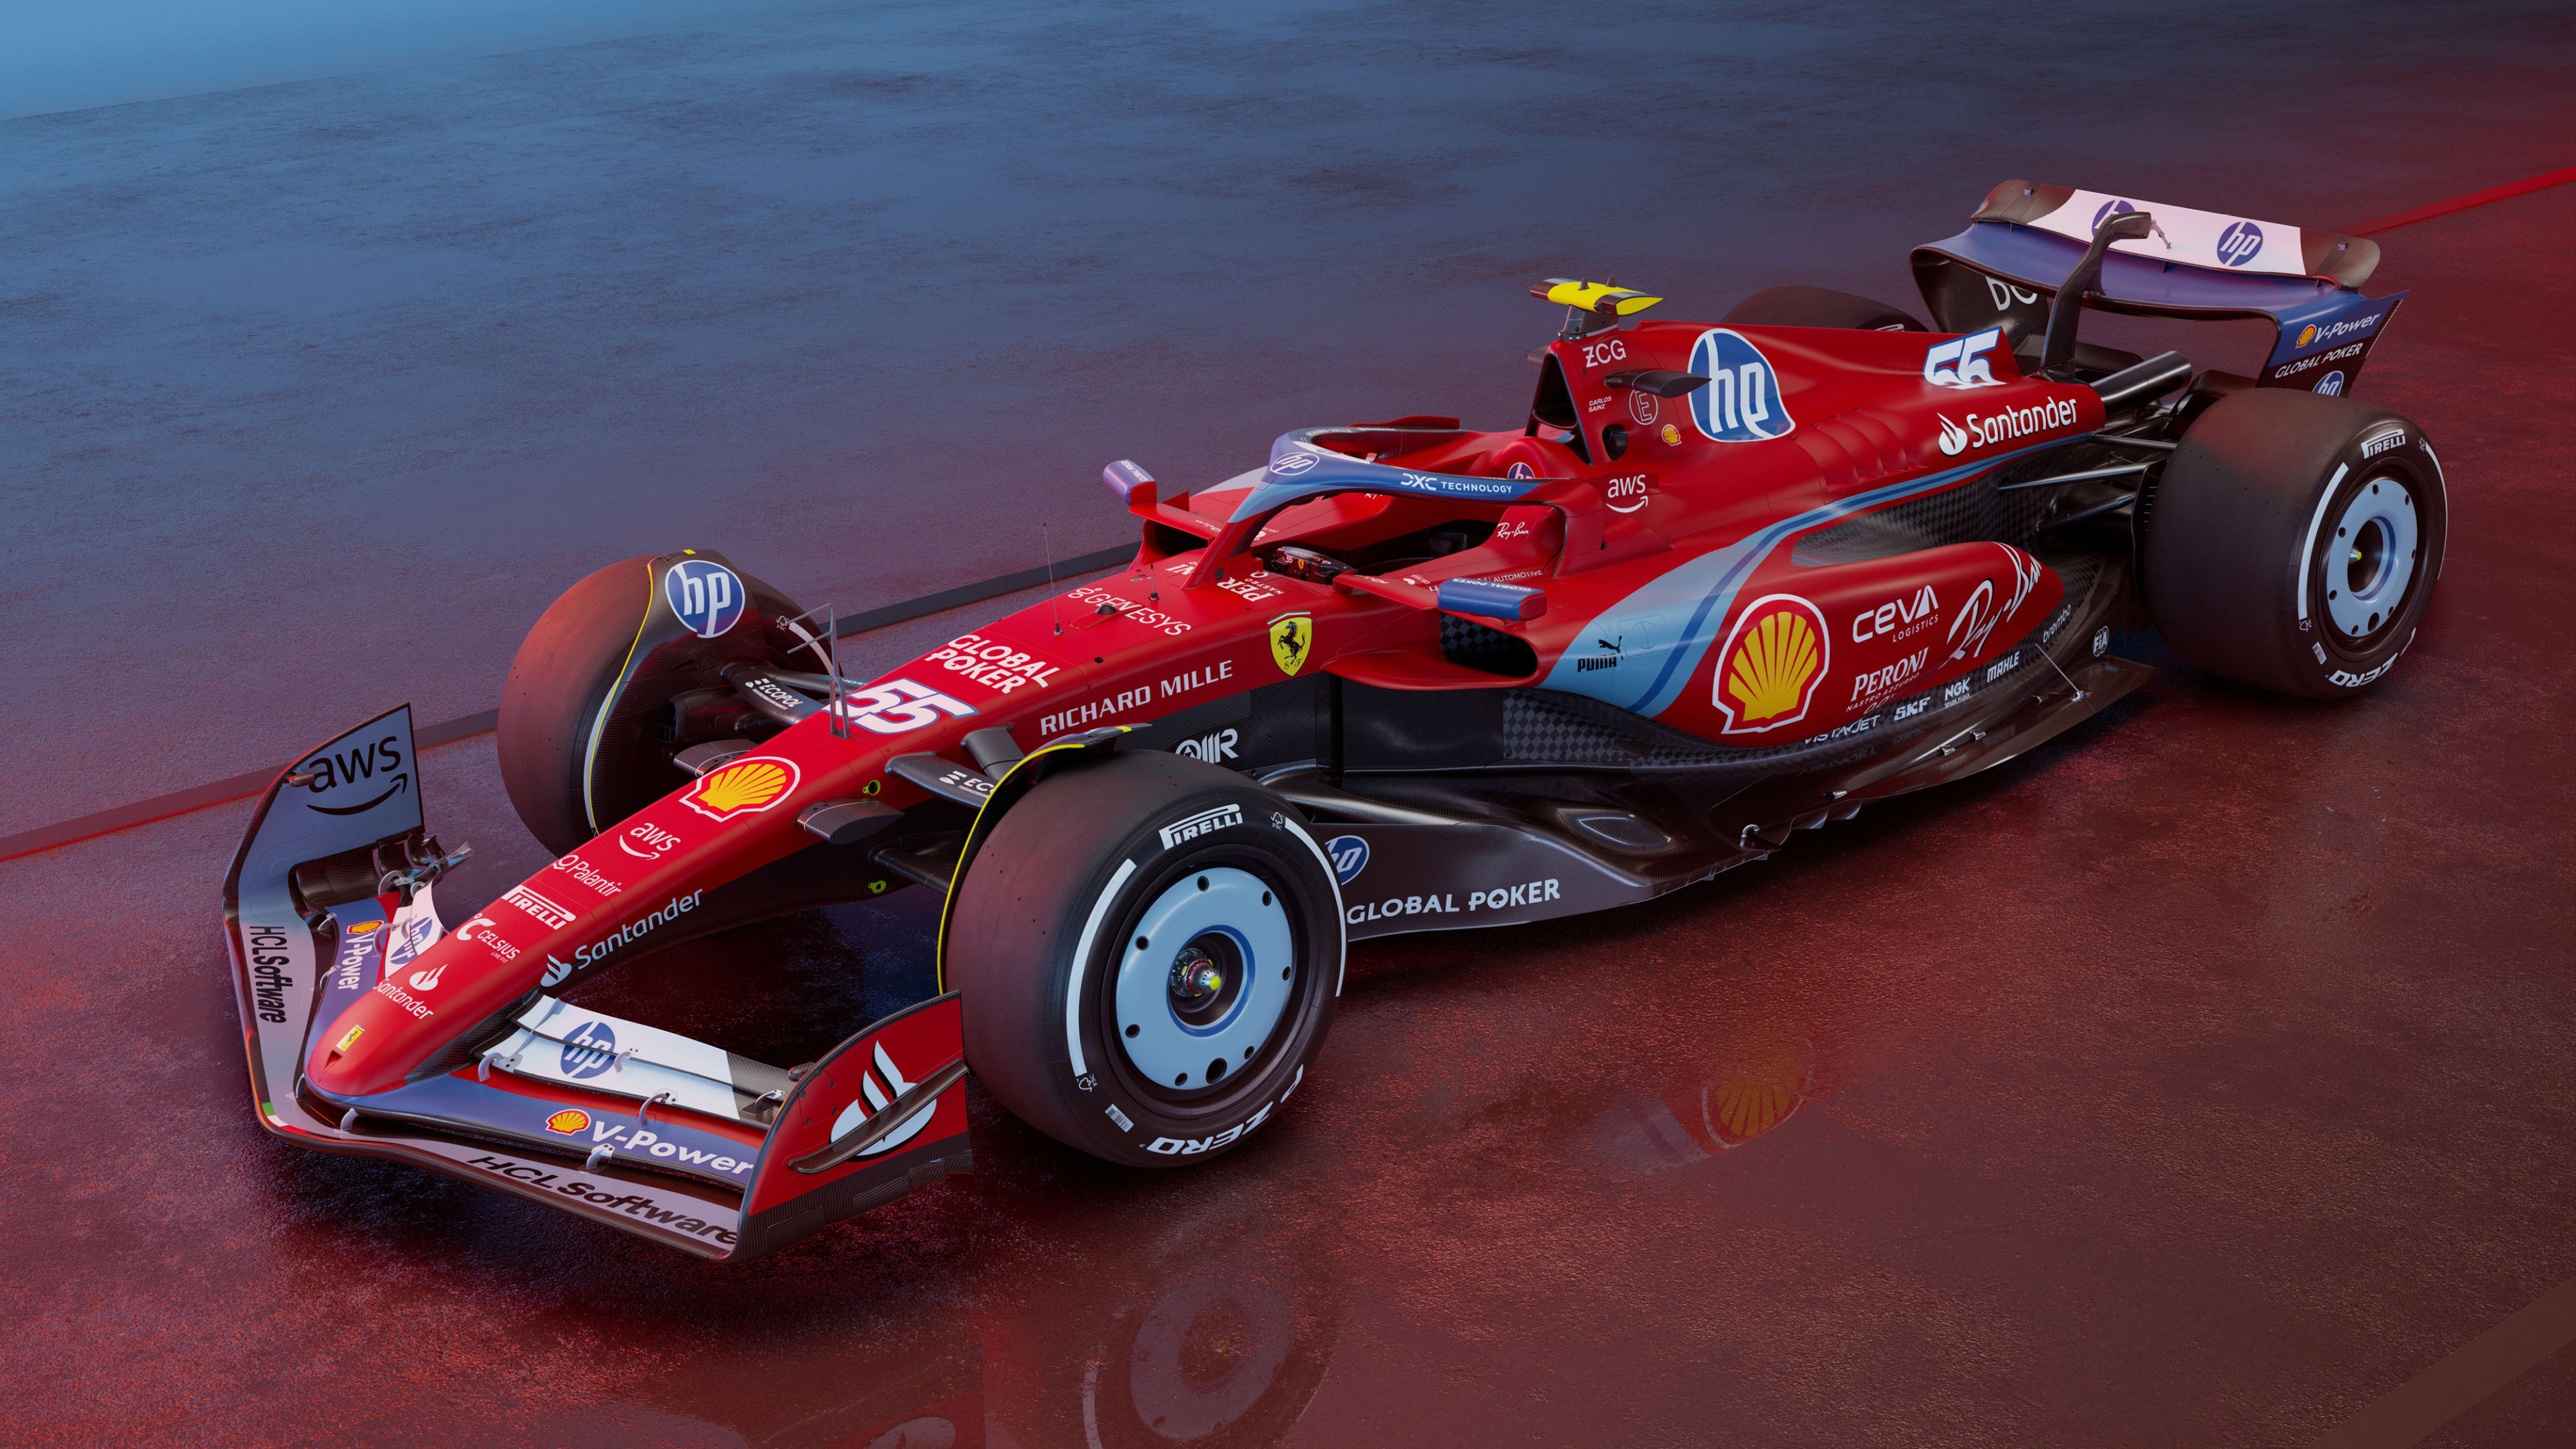 GALLERY: Ferrari unveil special livery for Miami Grand Prix